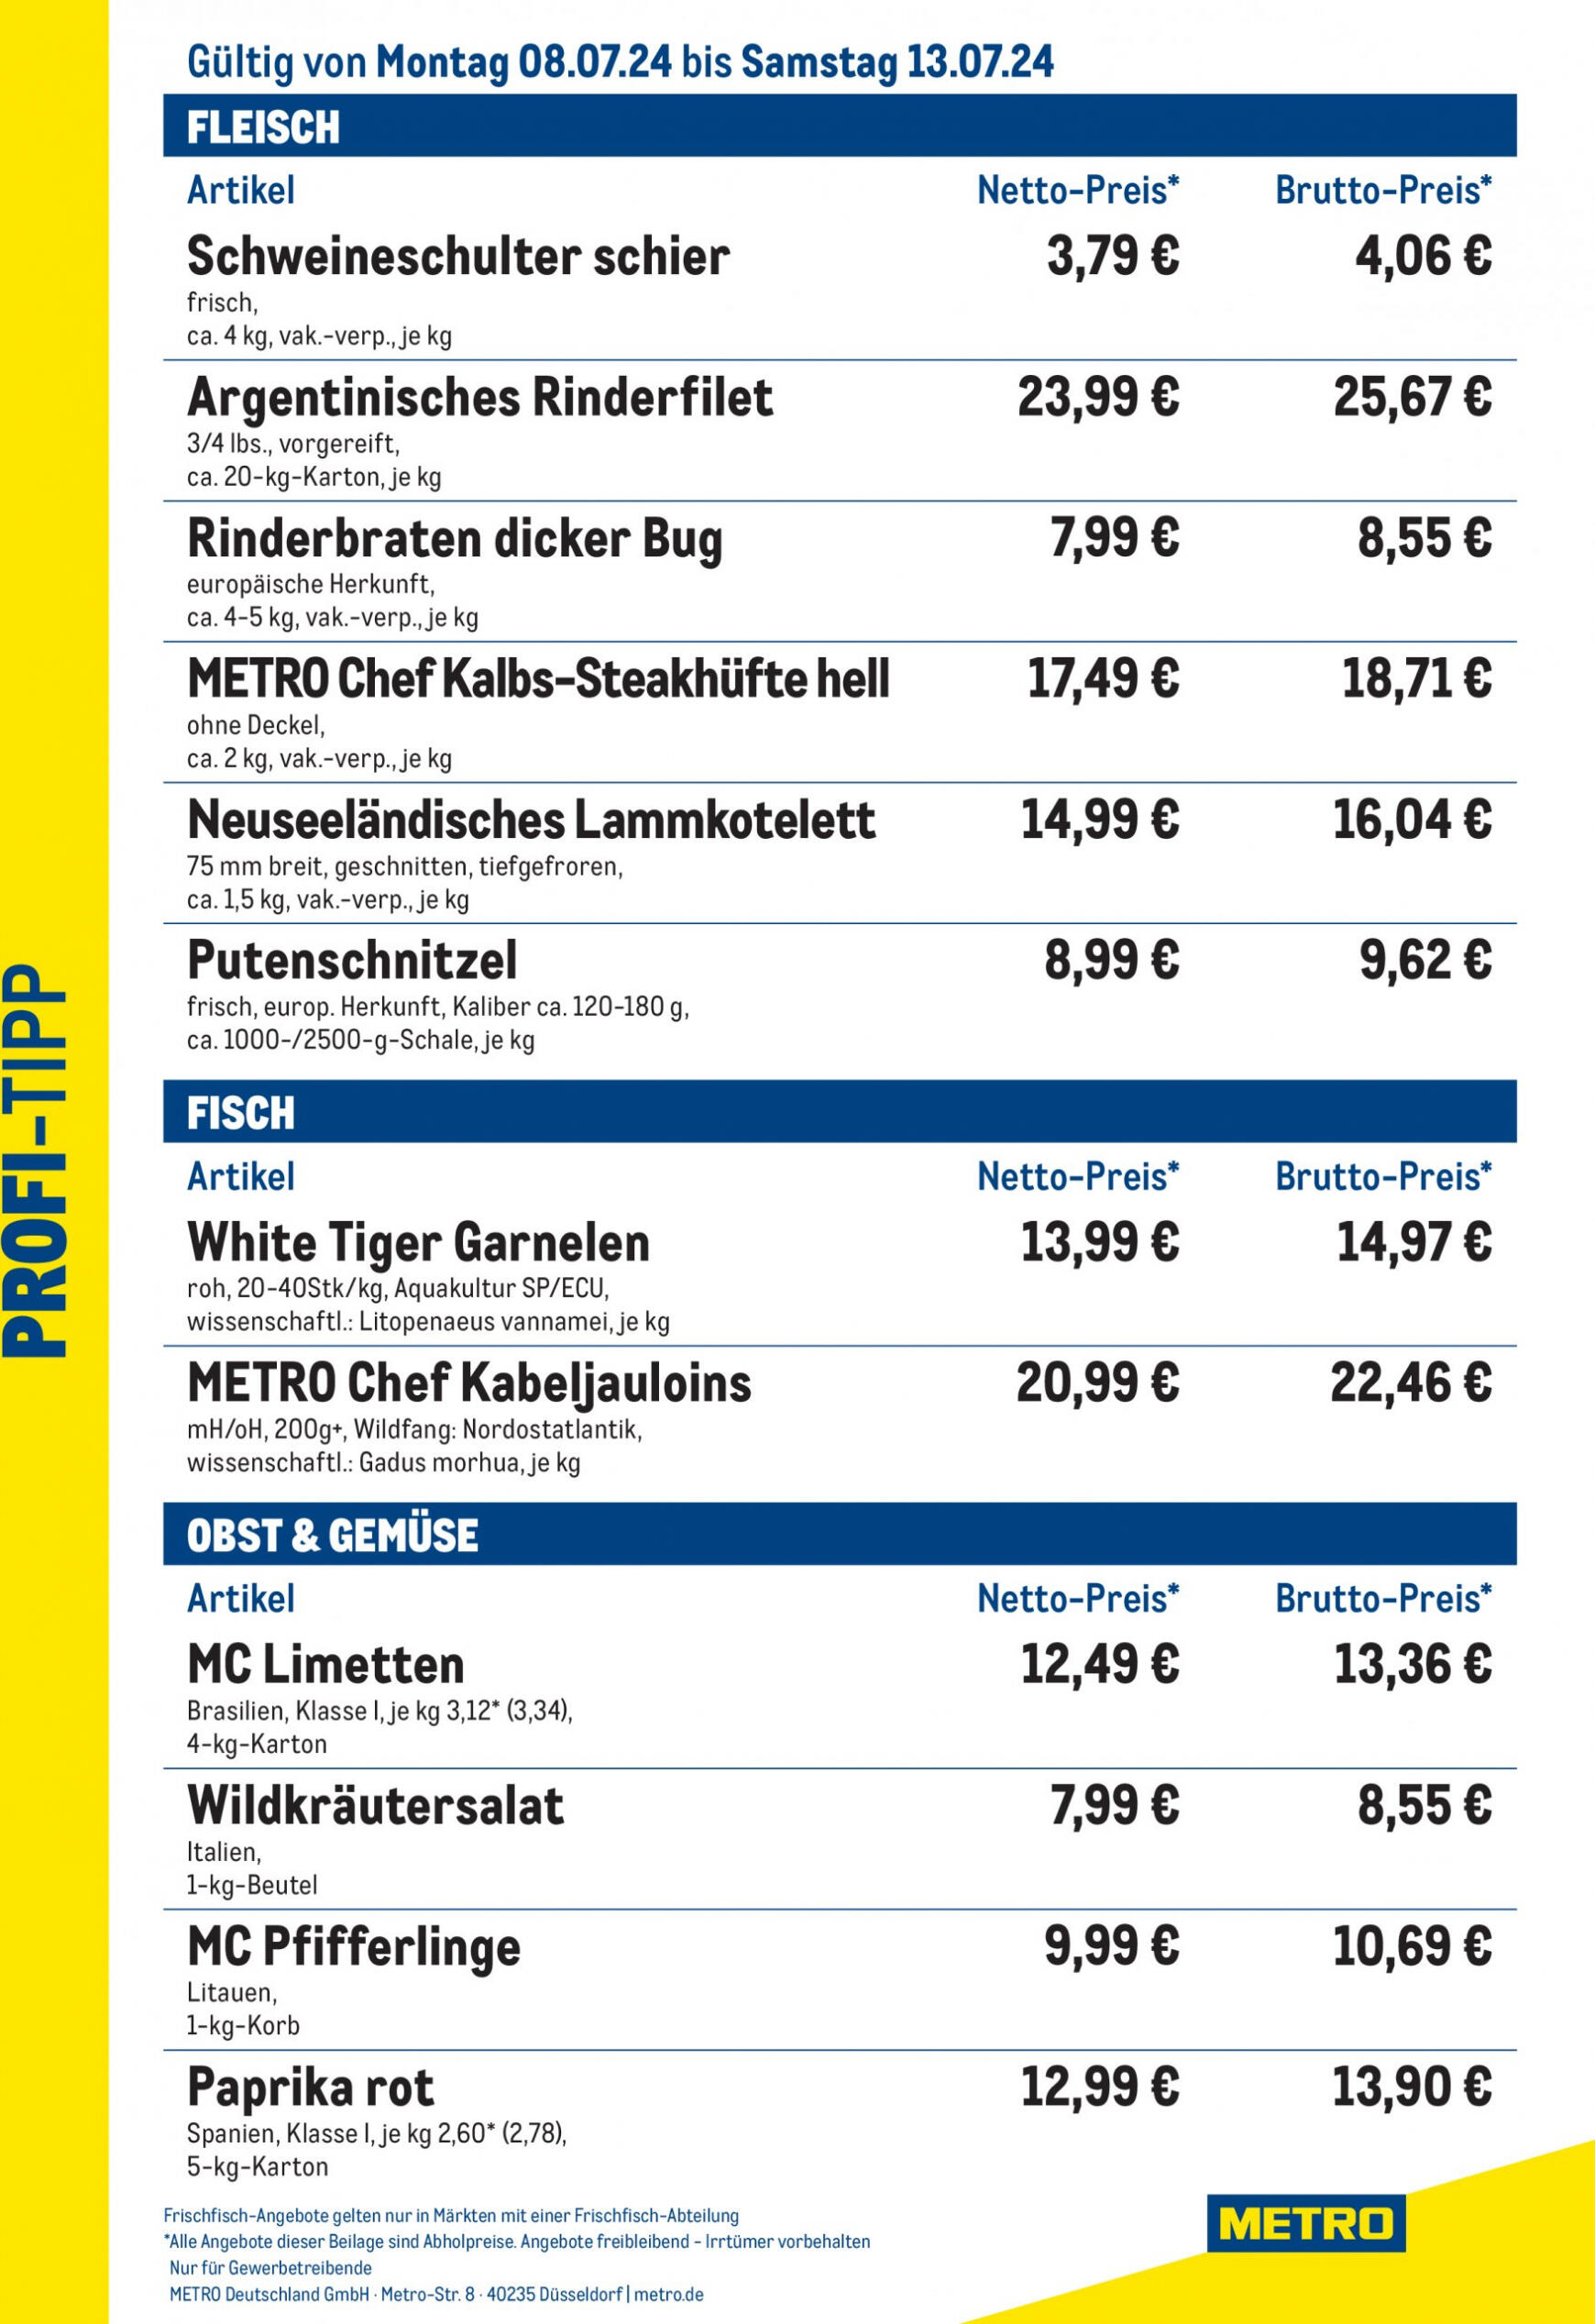 metro - Flyer Metro - Profi-Tipp aktuell 08.07. - 13.07.